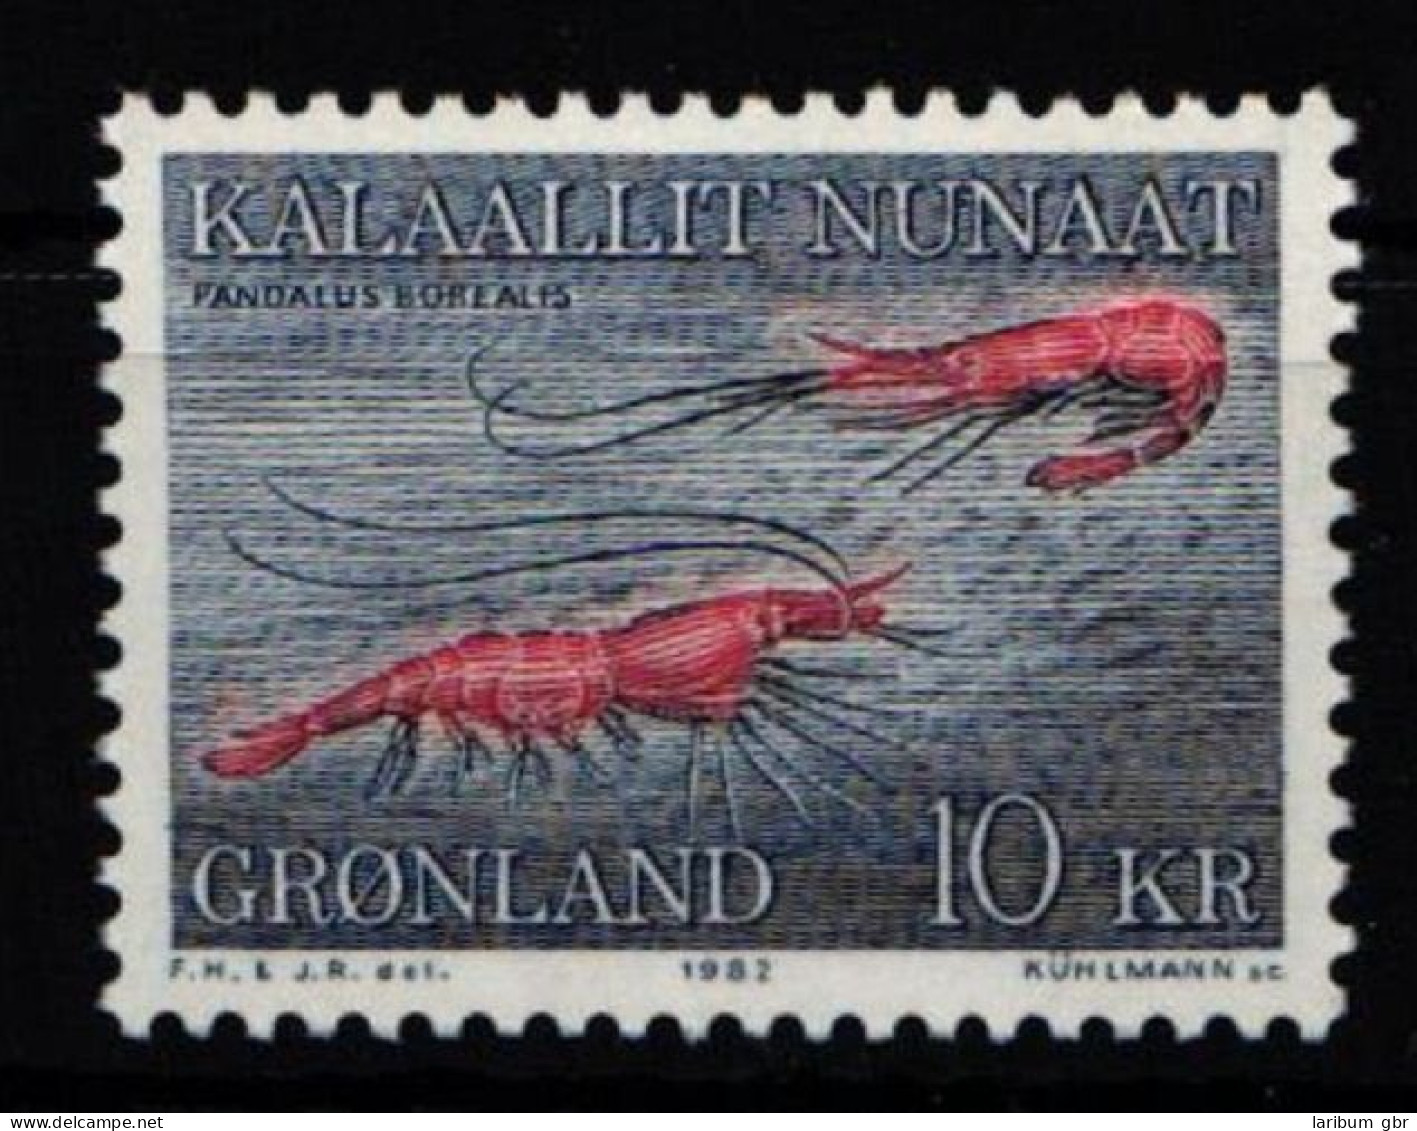 Grönland 133 Postfrisch #KO982 - Marine Life